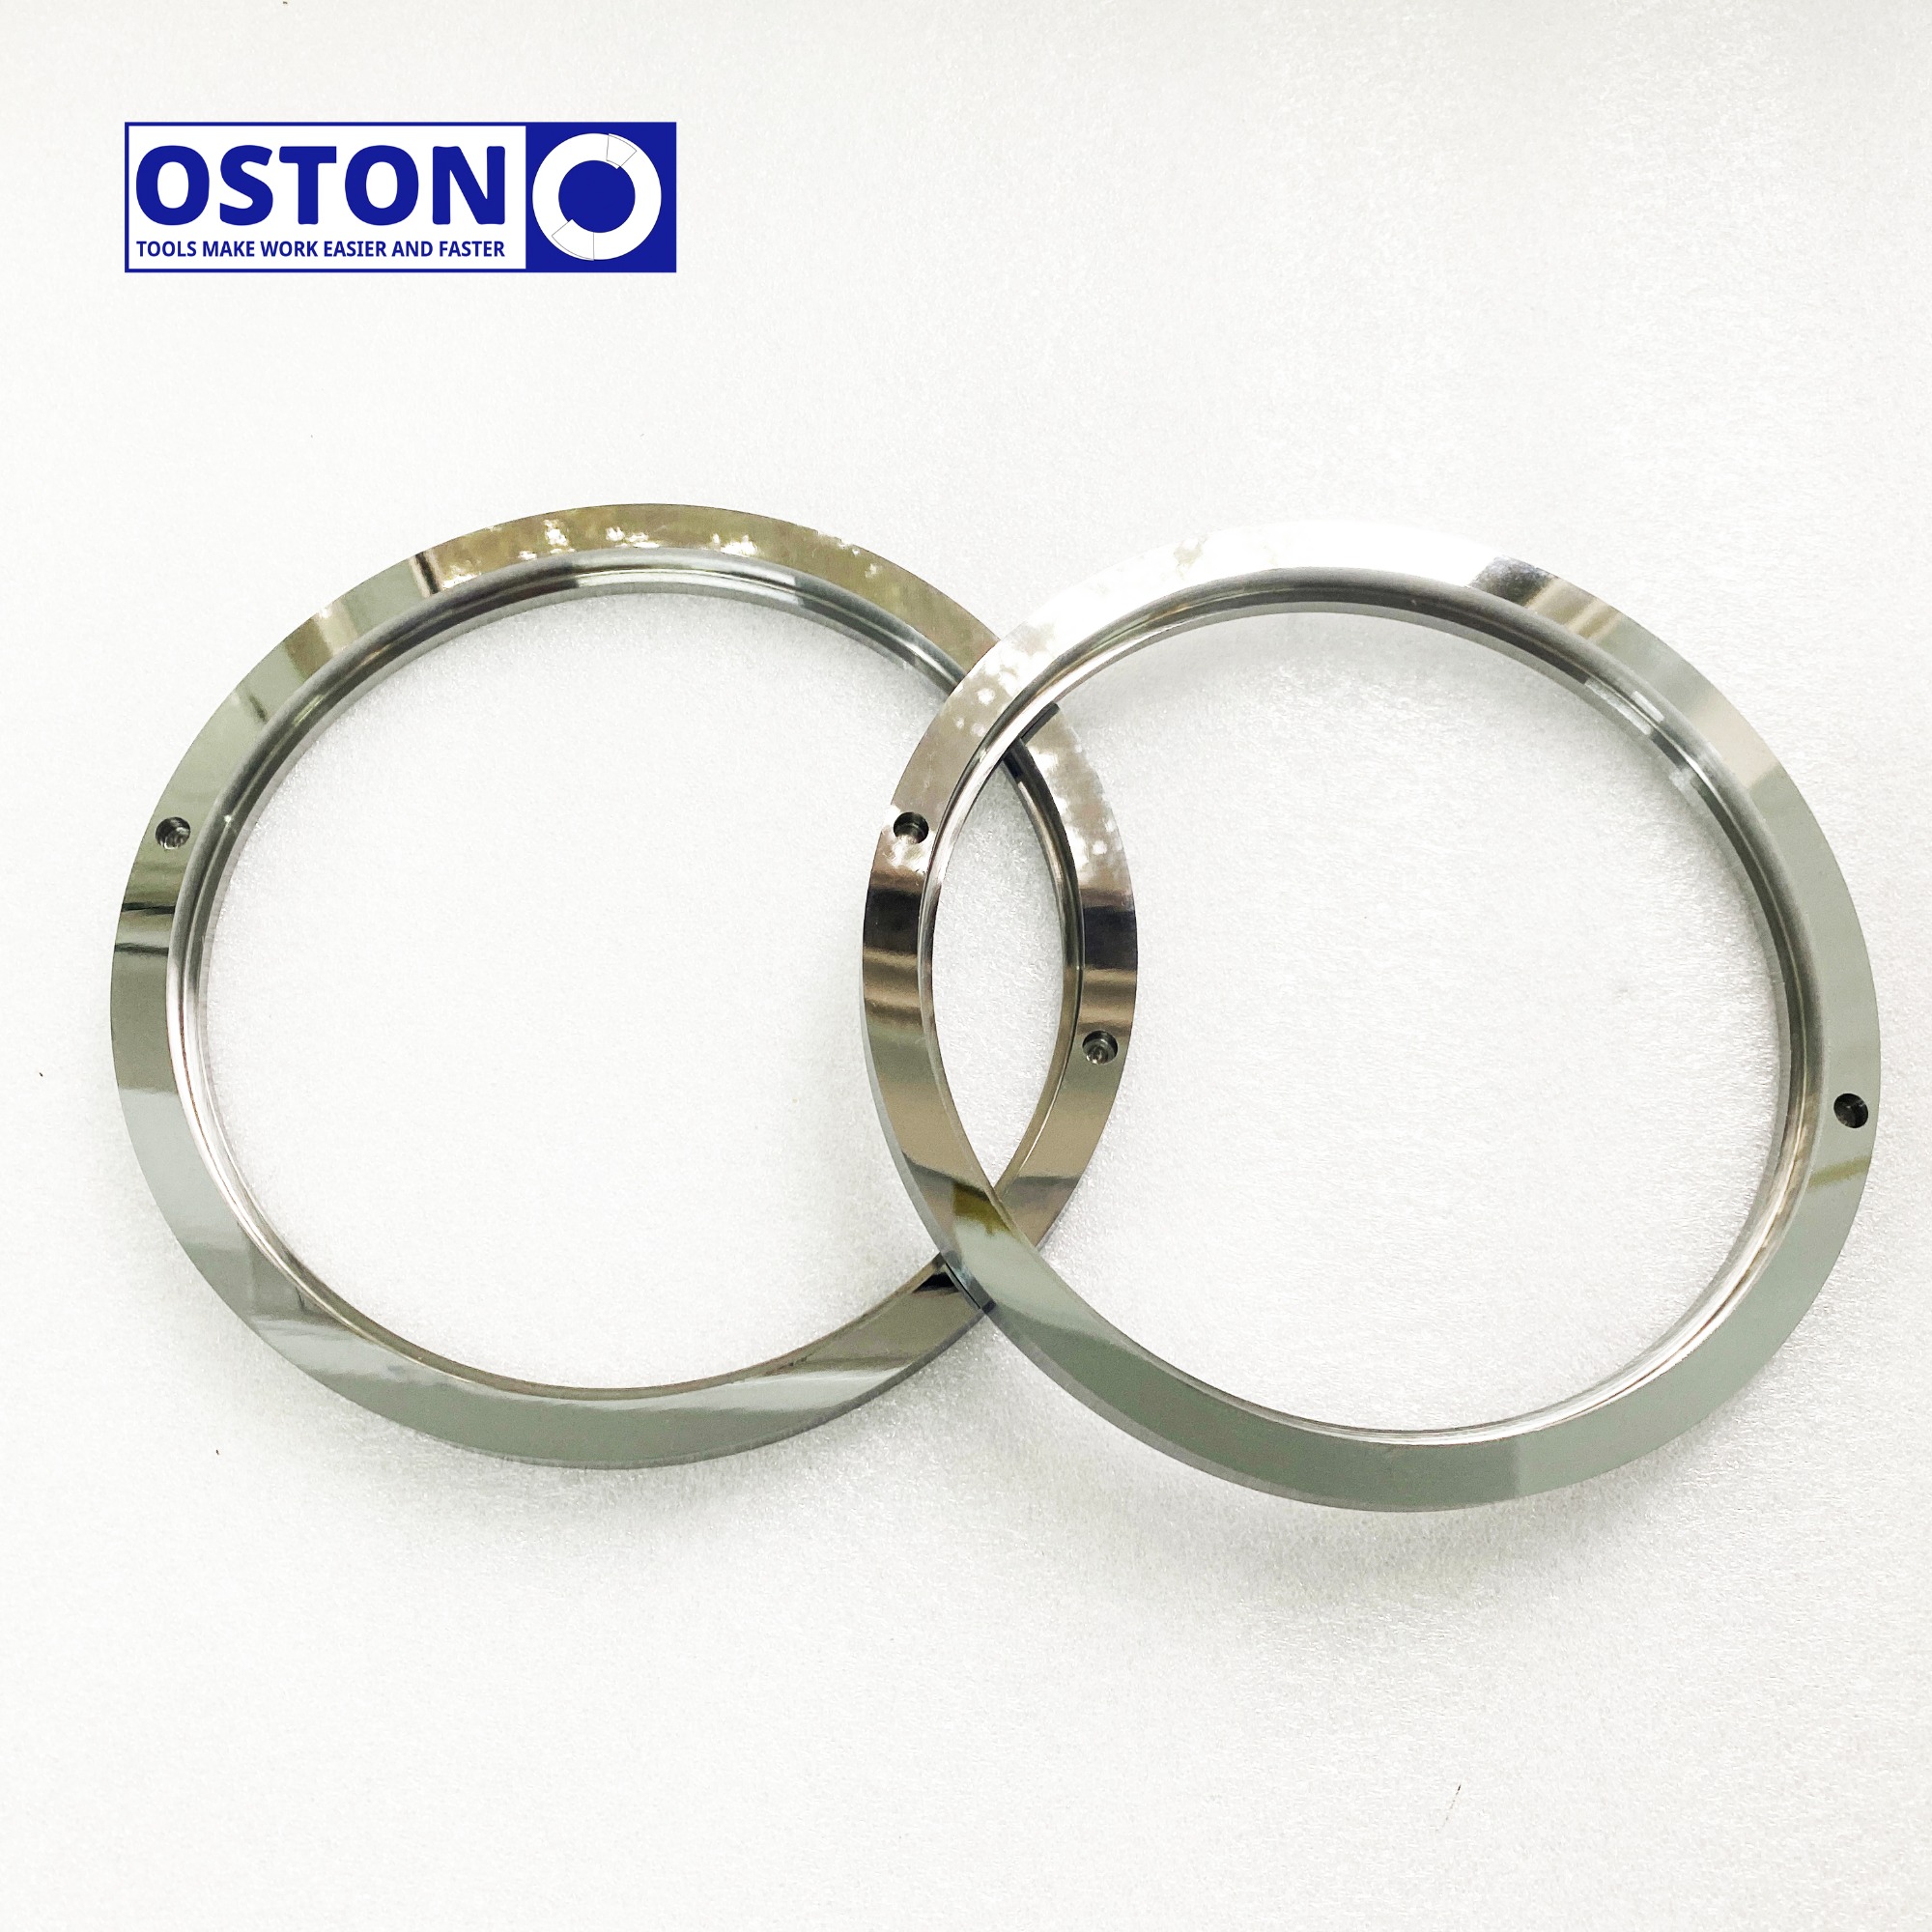 Tungsten Carbide Sealing Ring